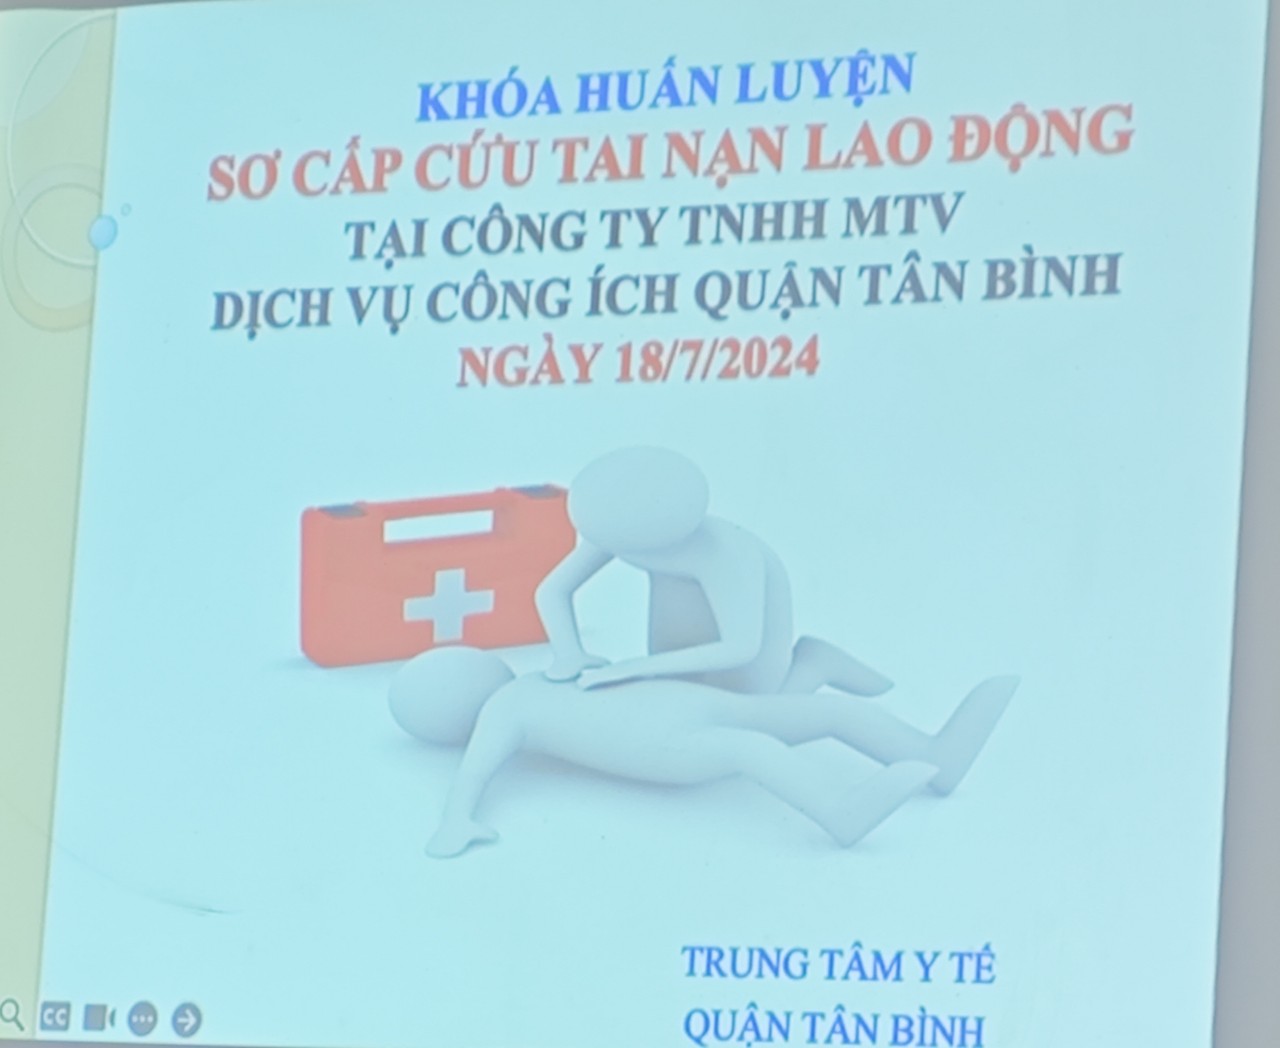 Huấn luyện sơ cấp cứu tai nạn lao động tại Công ty TNHH MTV Dịch Vụ Công Ích Quận Tân Bình ngày 18/7/2024